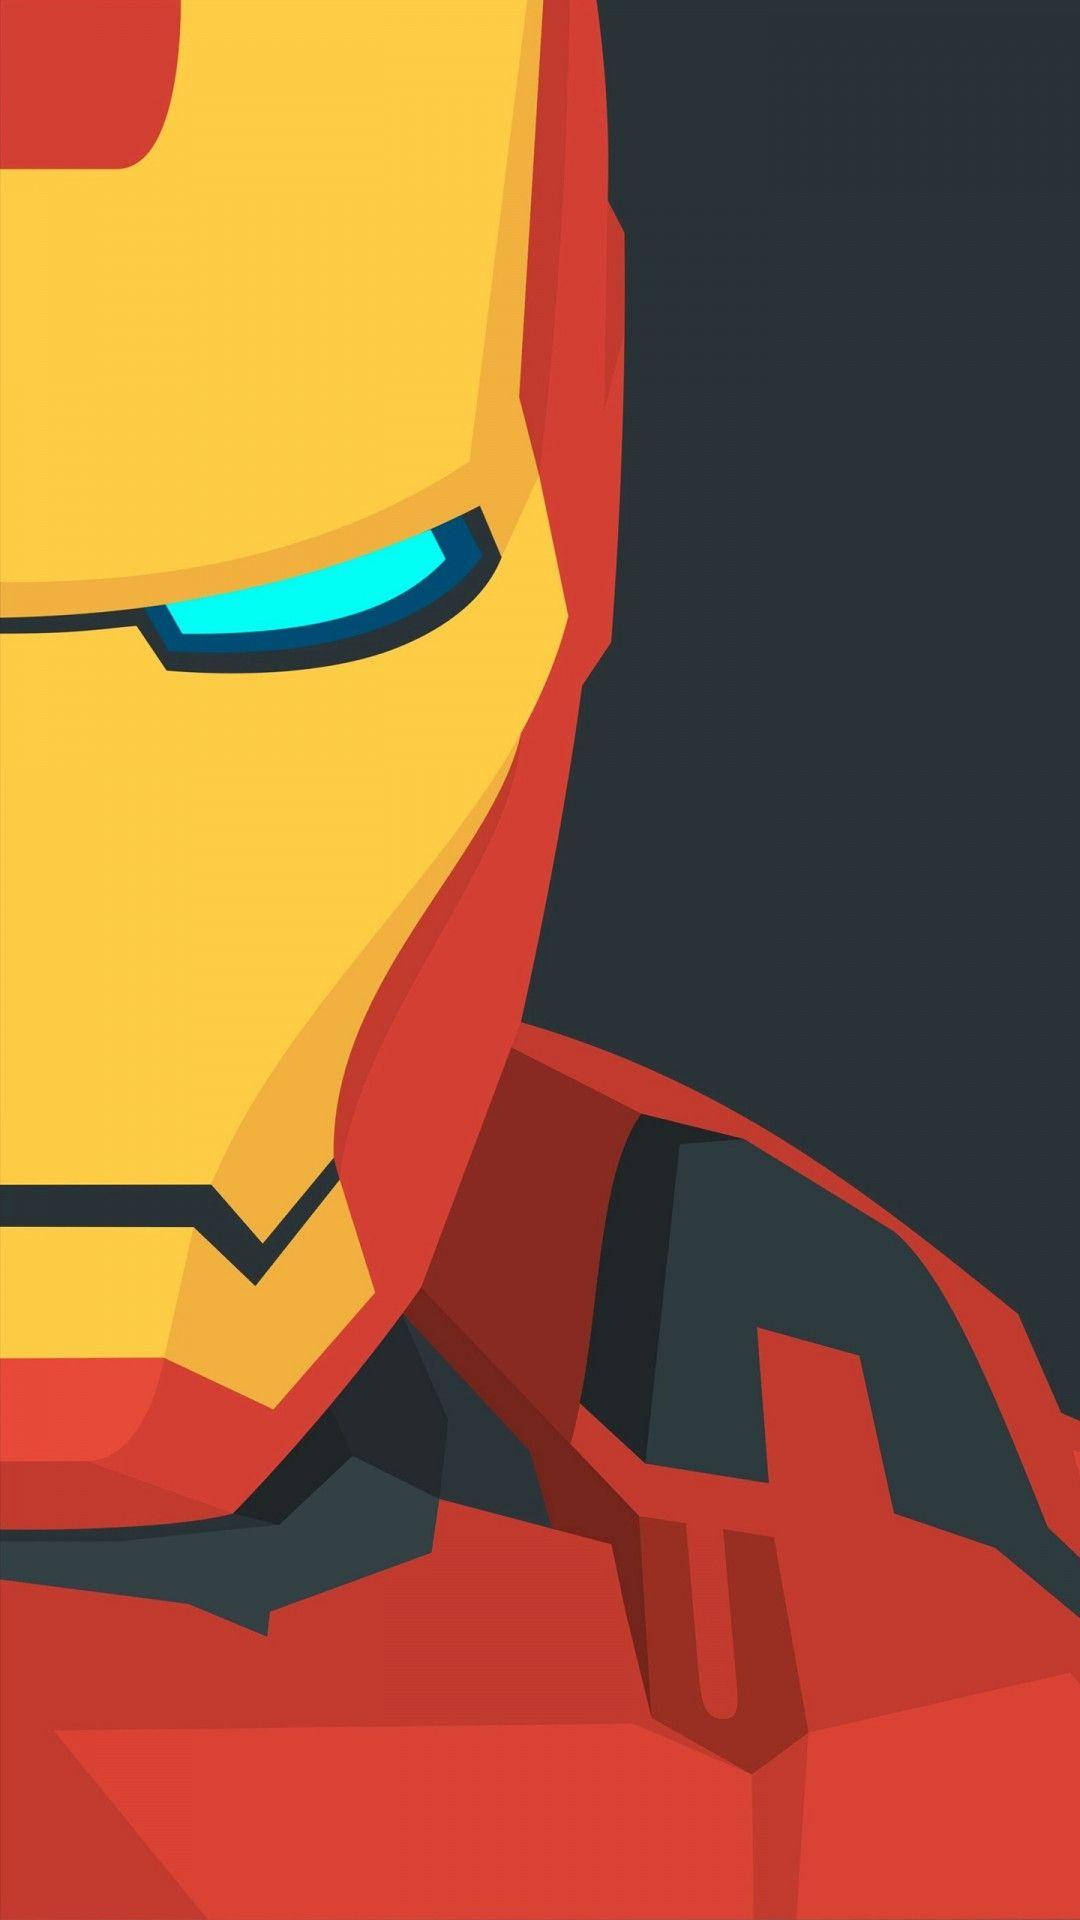 Tapetför Android Med Iron Man På Vänster Sida. Wallpaper